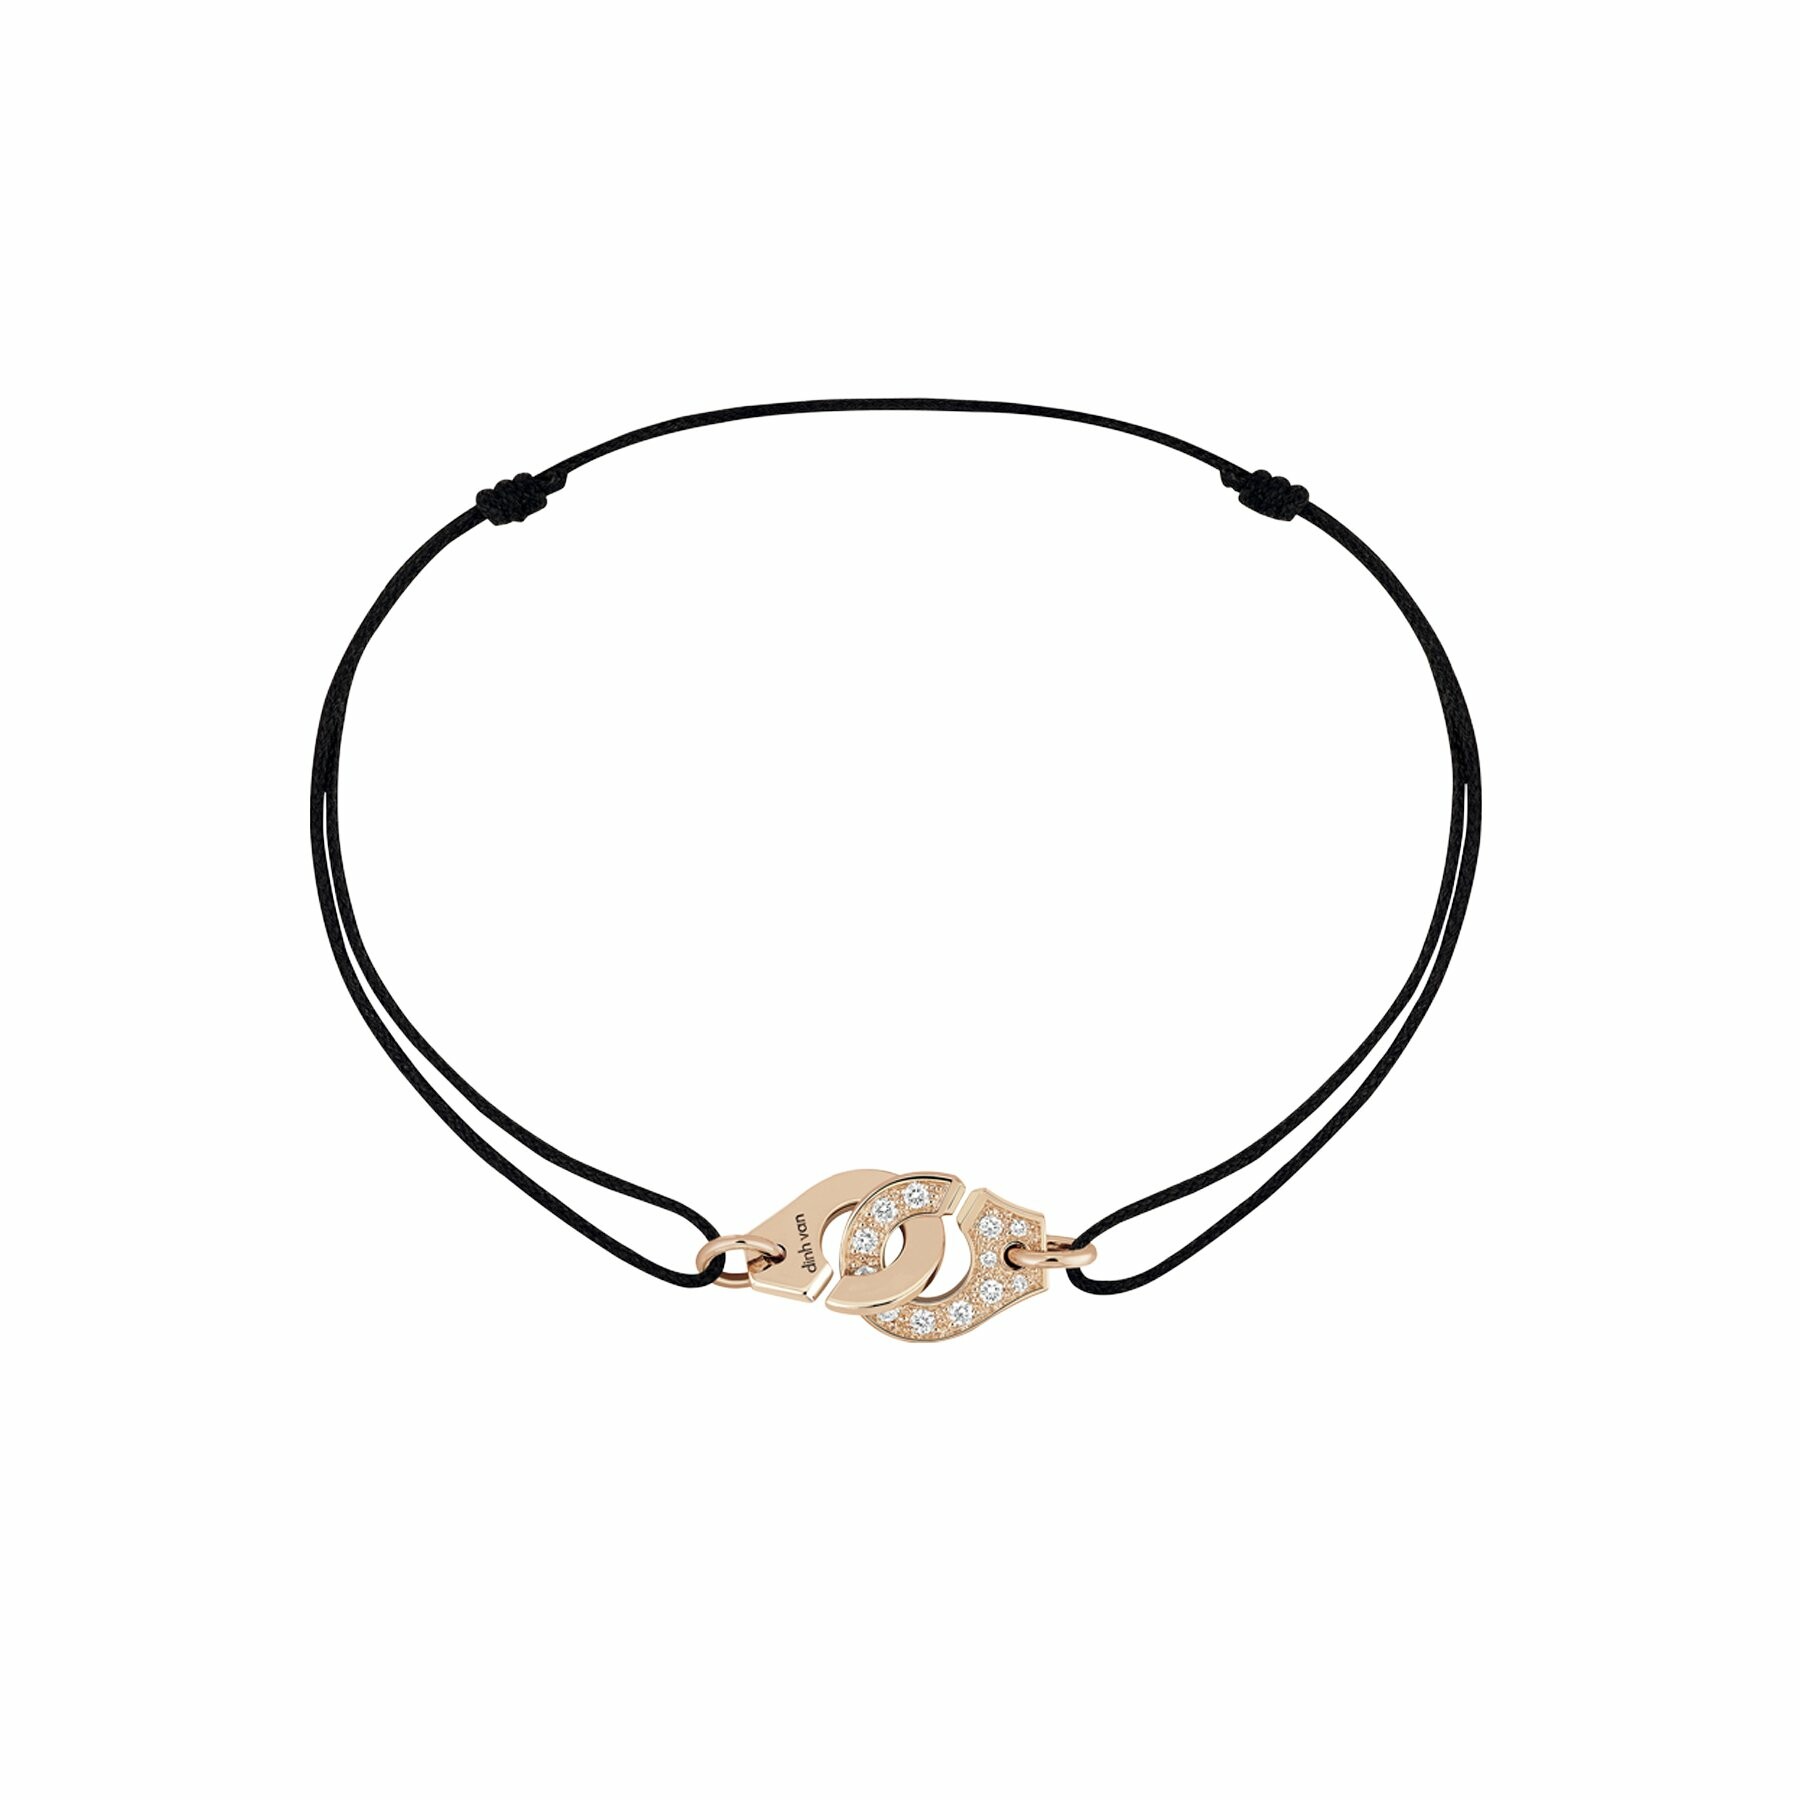 Bracelet sur cordon Menottes dinh van R8 en or rose et diamants vue 1